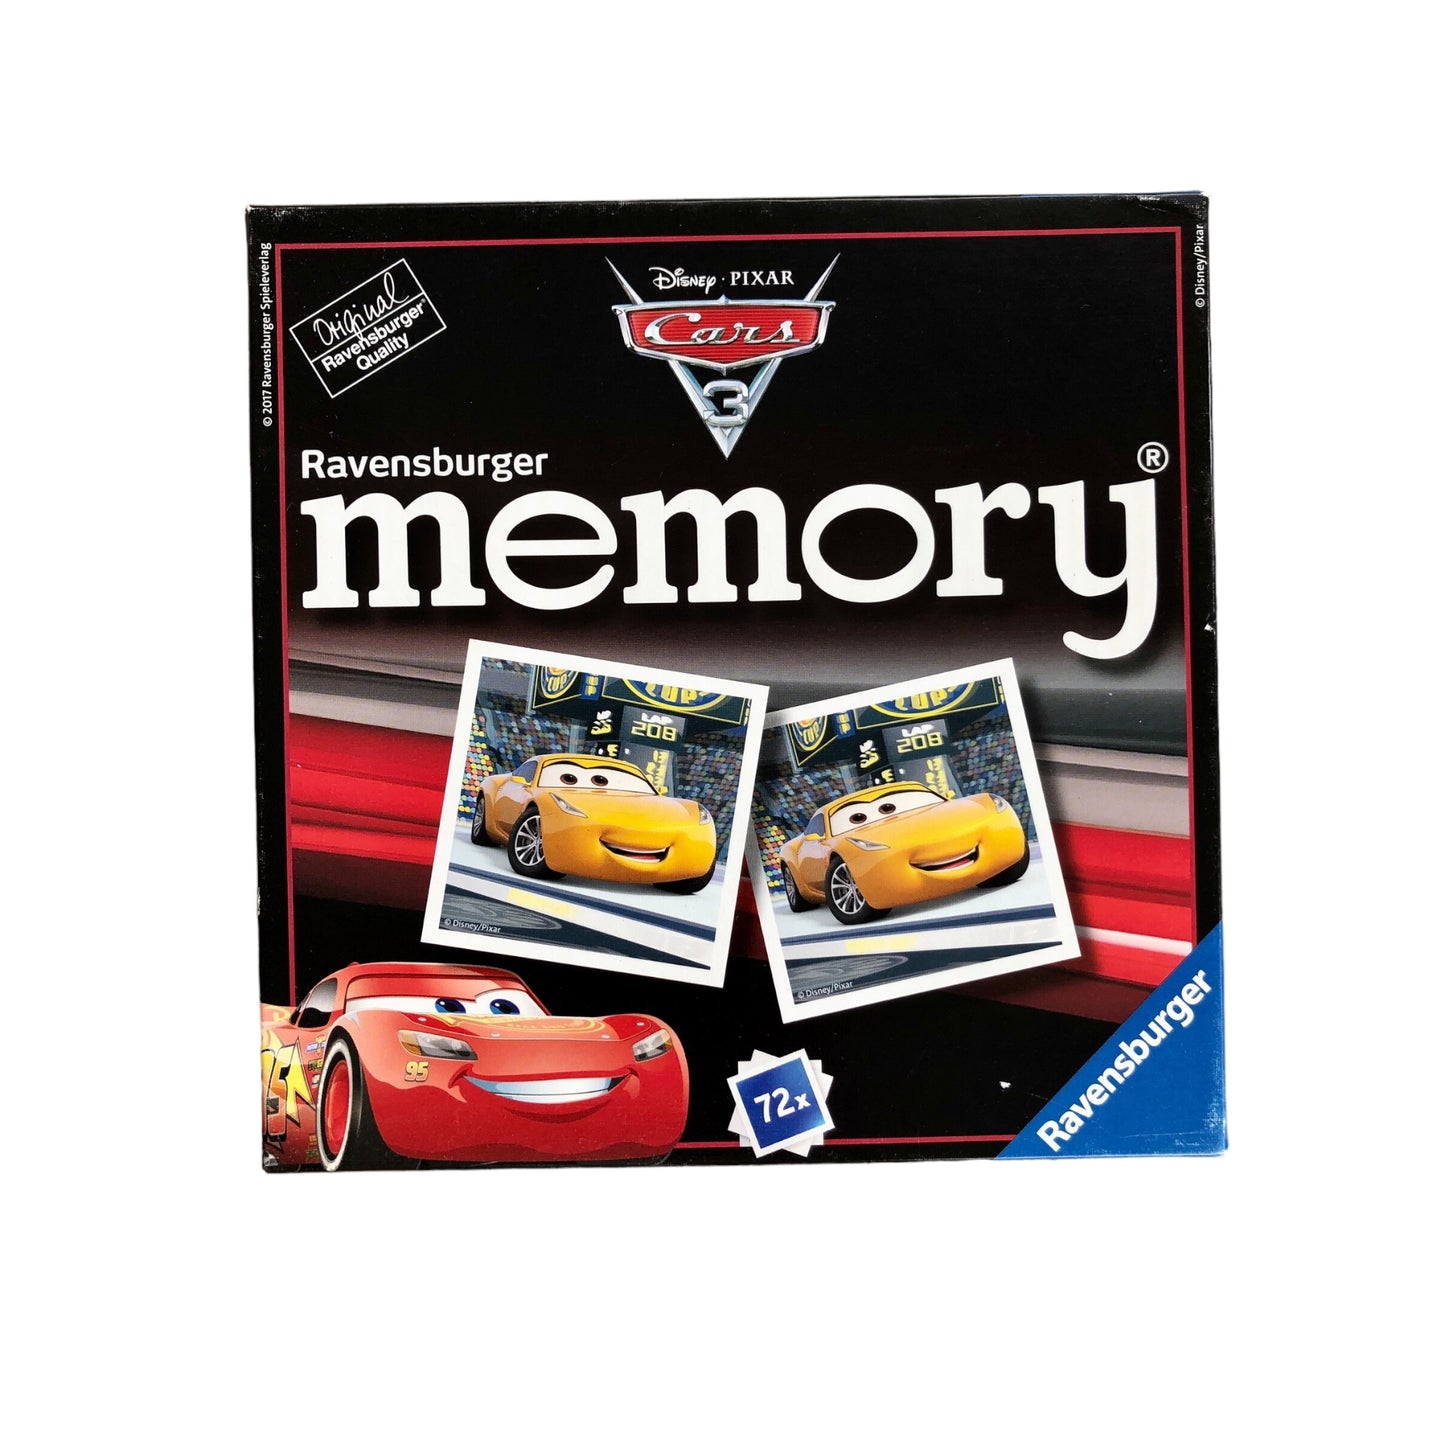 Ravensburger - Disney Pixar Cars 3 ® Memory